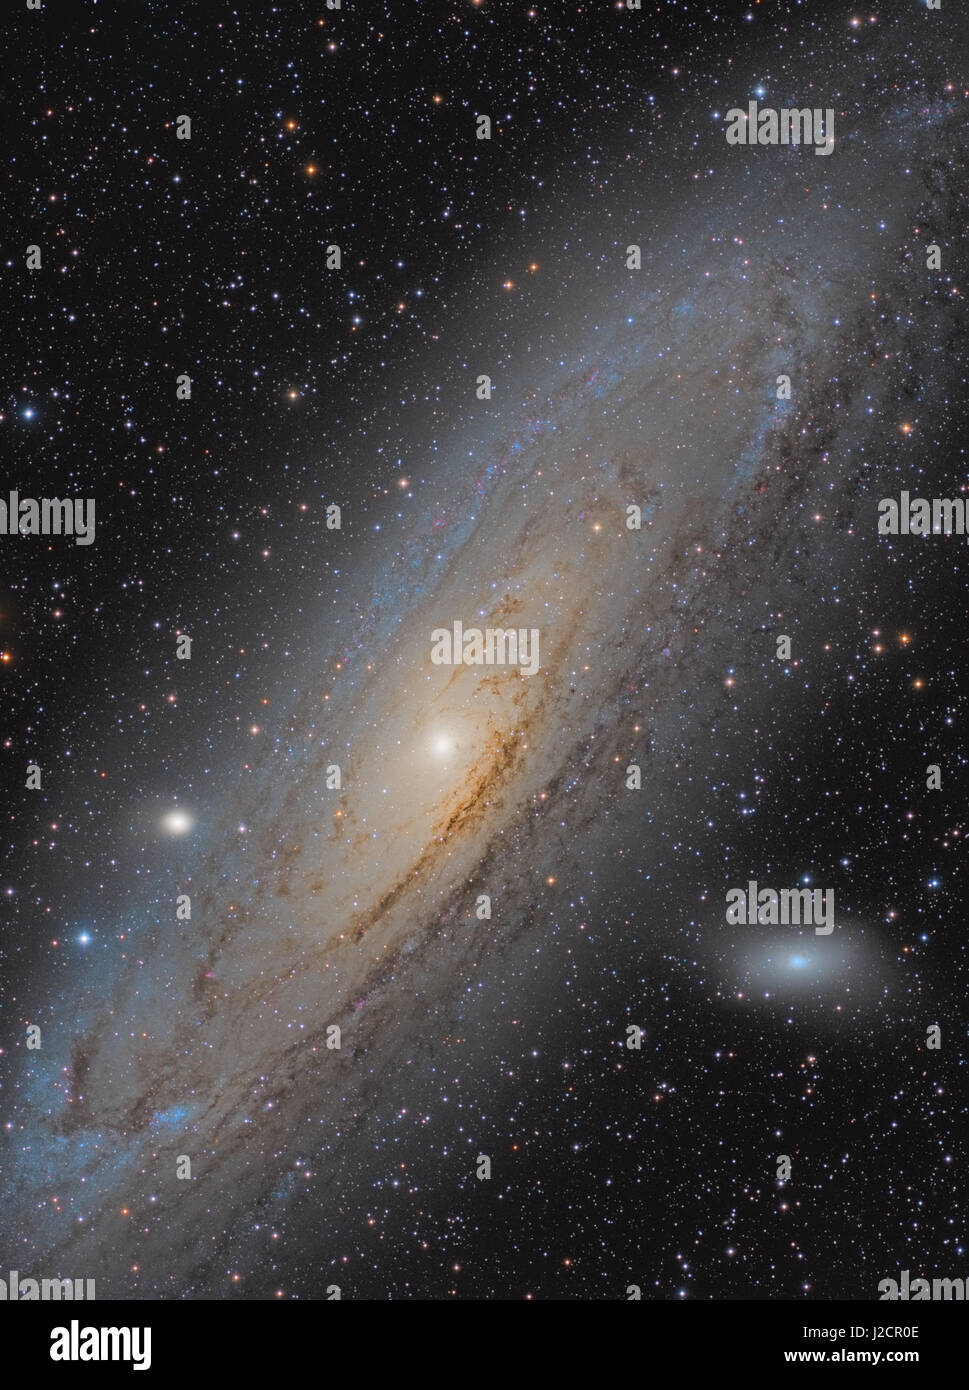 Die große Galaxie Andromeda, Messier 31 (M31, NGC 224) - eine Spiralgalaxie im Sternbild Andromeda - M32 und M110 sind ebenfalls sichtbar. Stockfoto